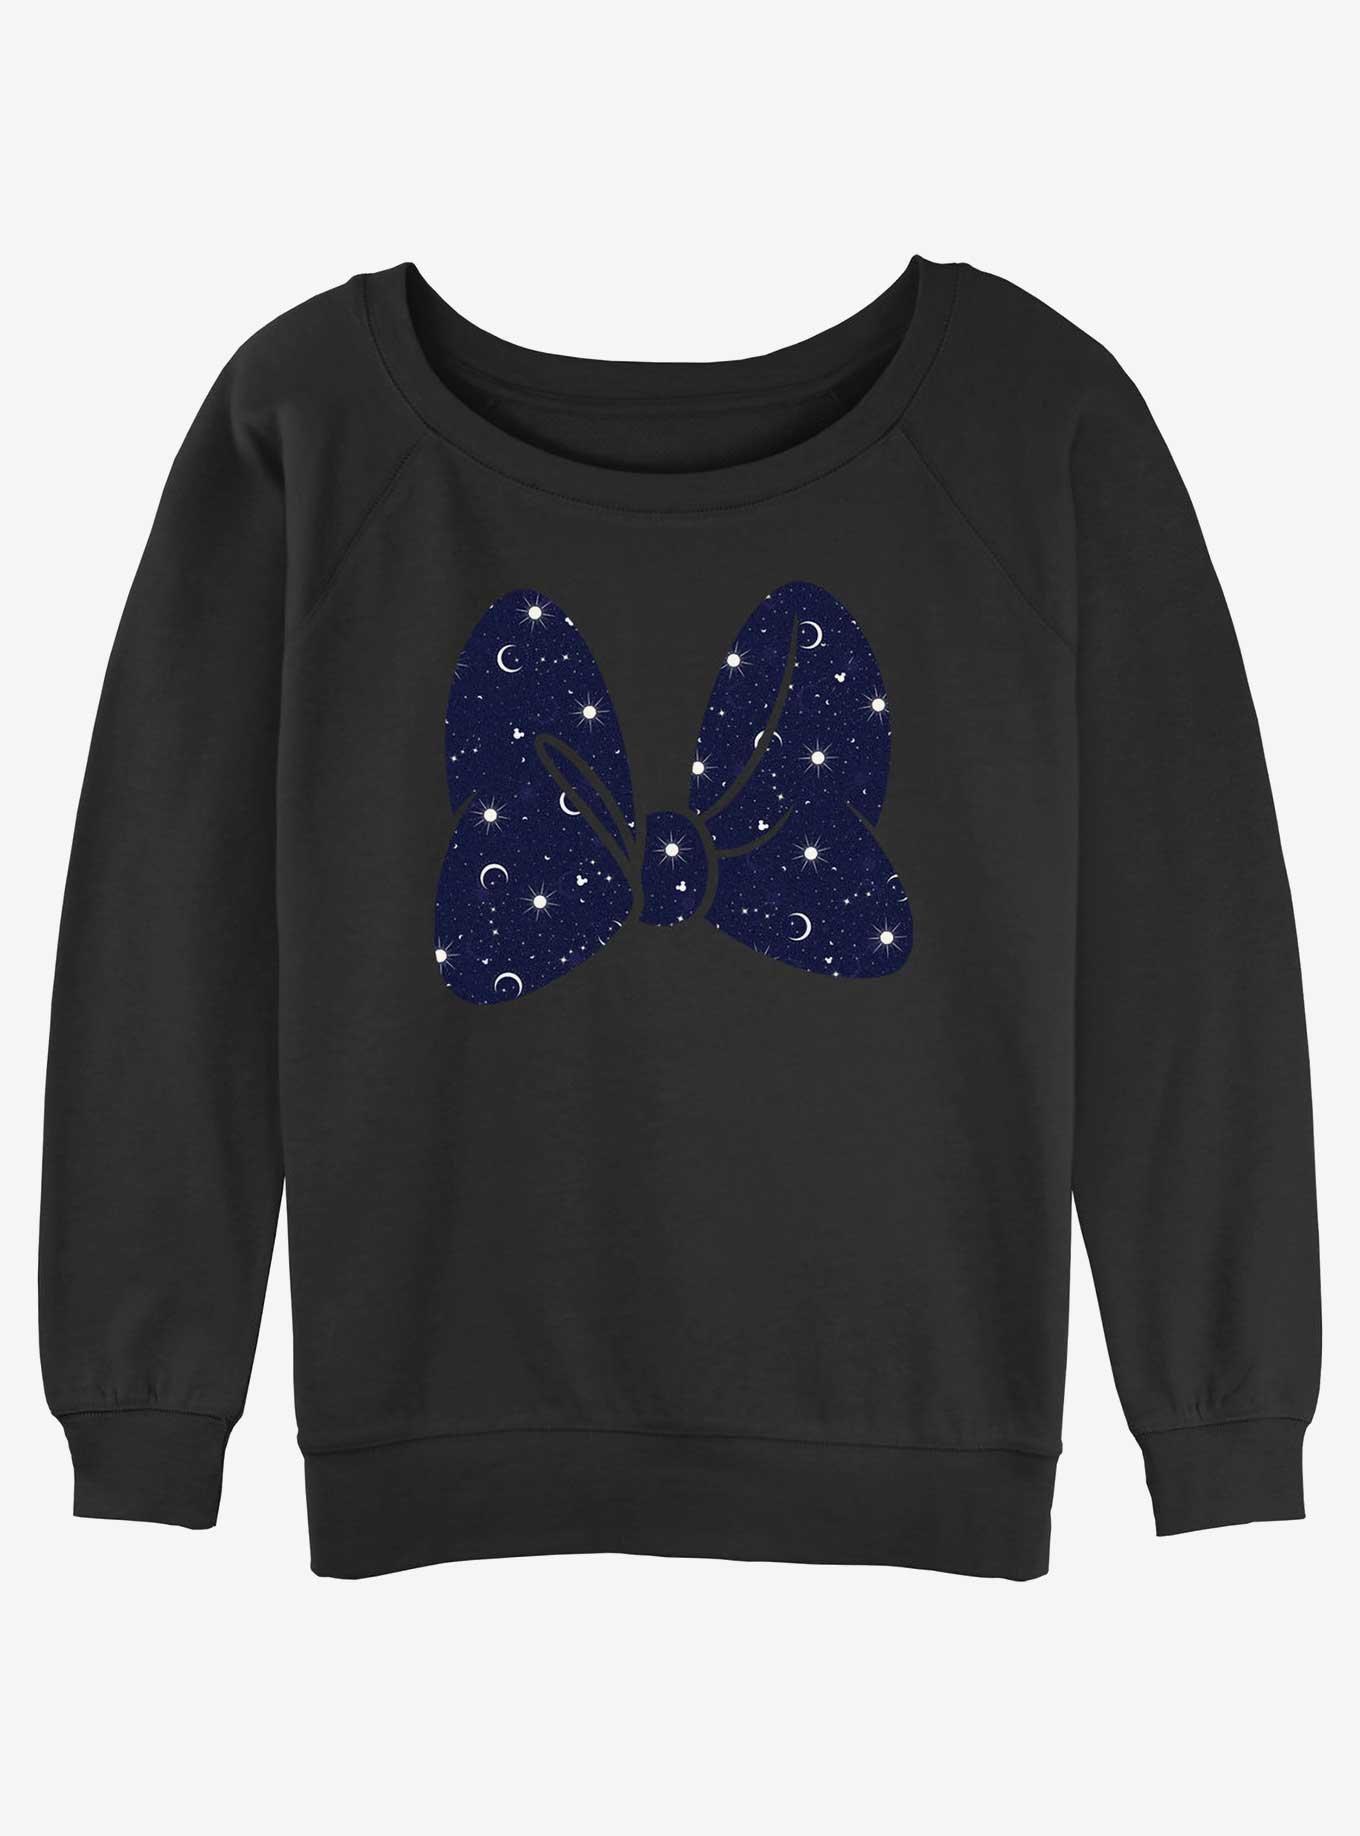 Disney Minnie Mouse Galaxy Print Bow Girls Slouchy Sweatshirt, , hi-res